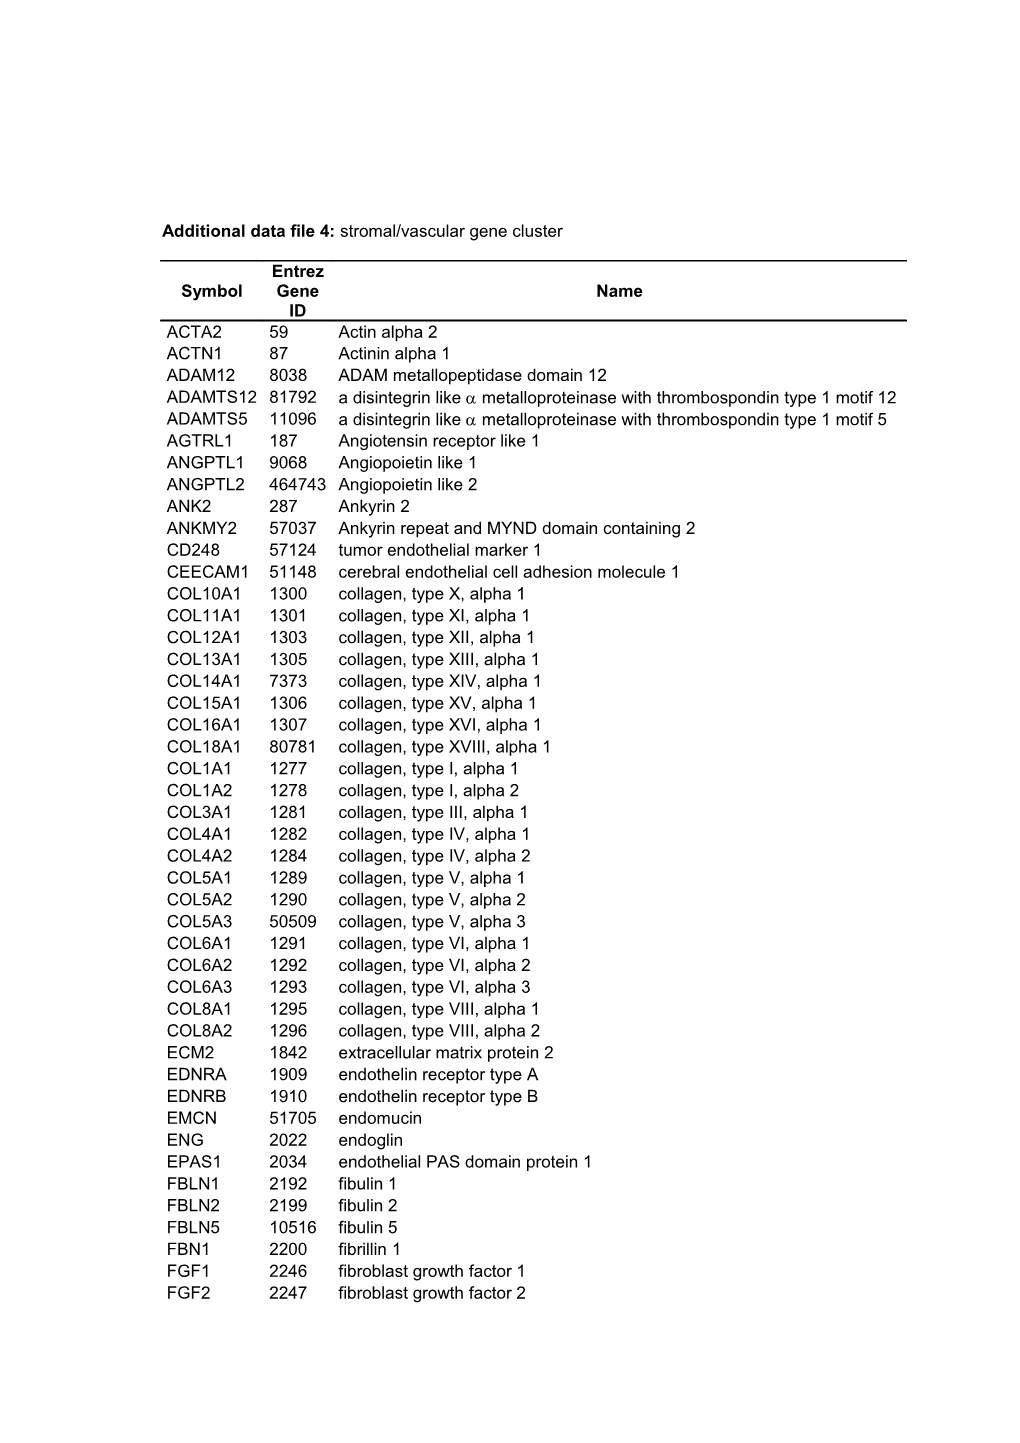 Additional Data File 4: Stromal/Vascular Gene Cluster